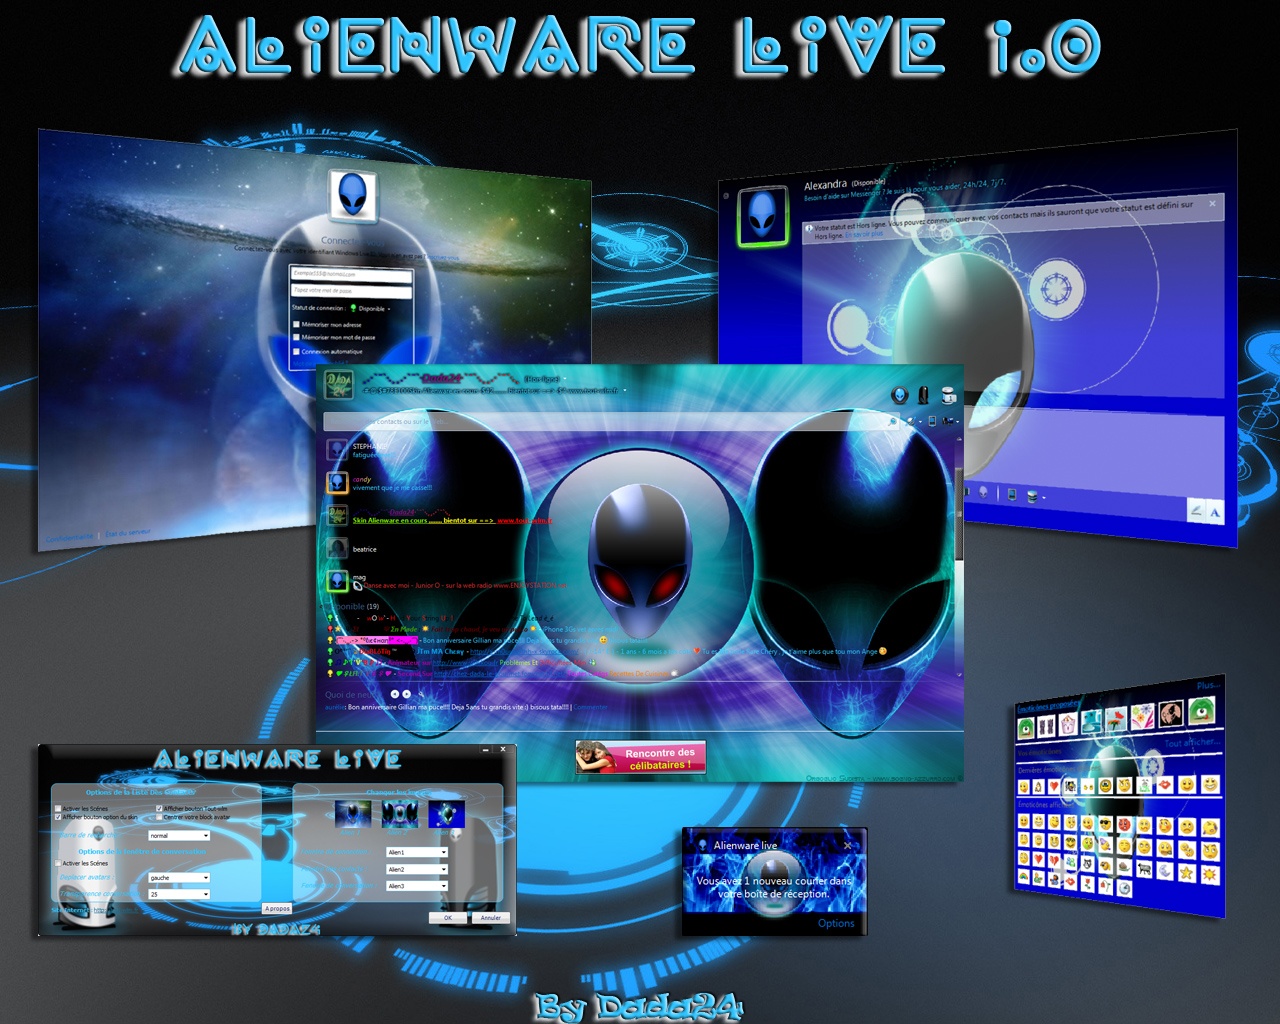 Alienware Live